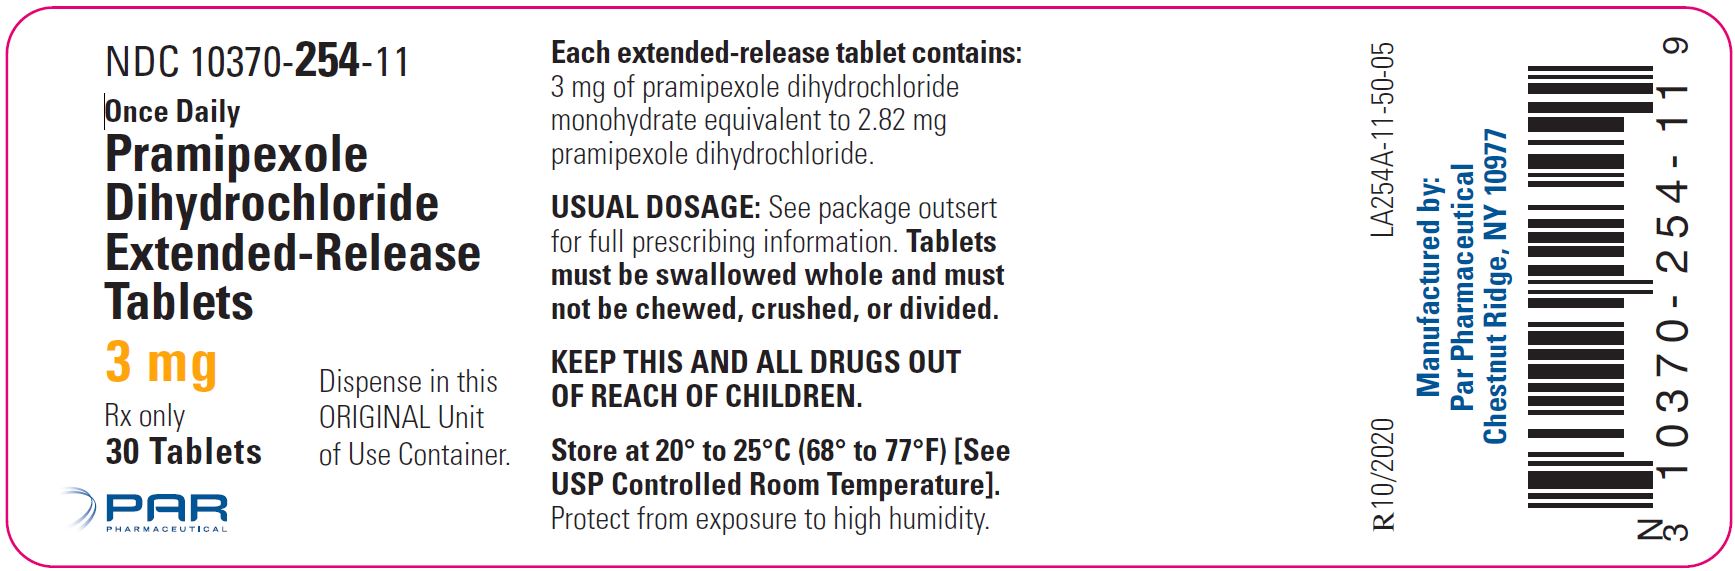 3 mg label